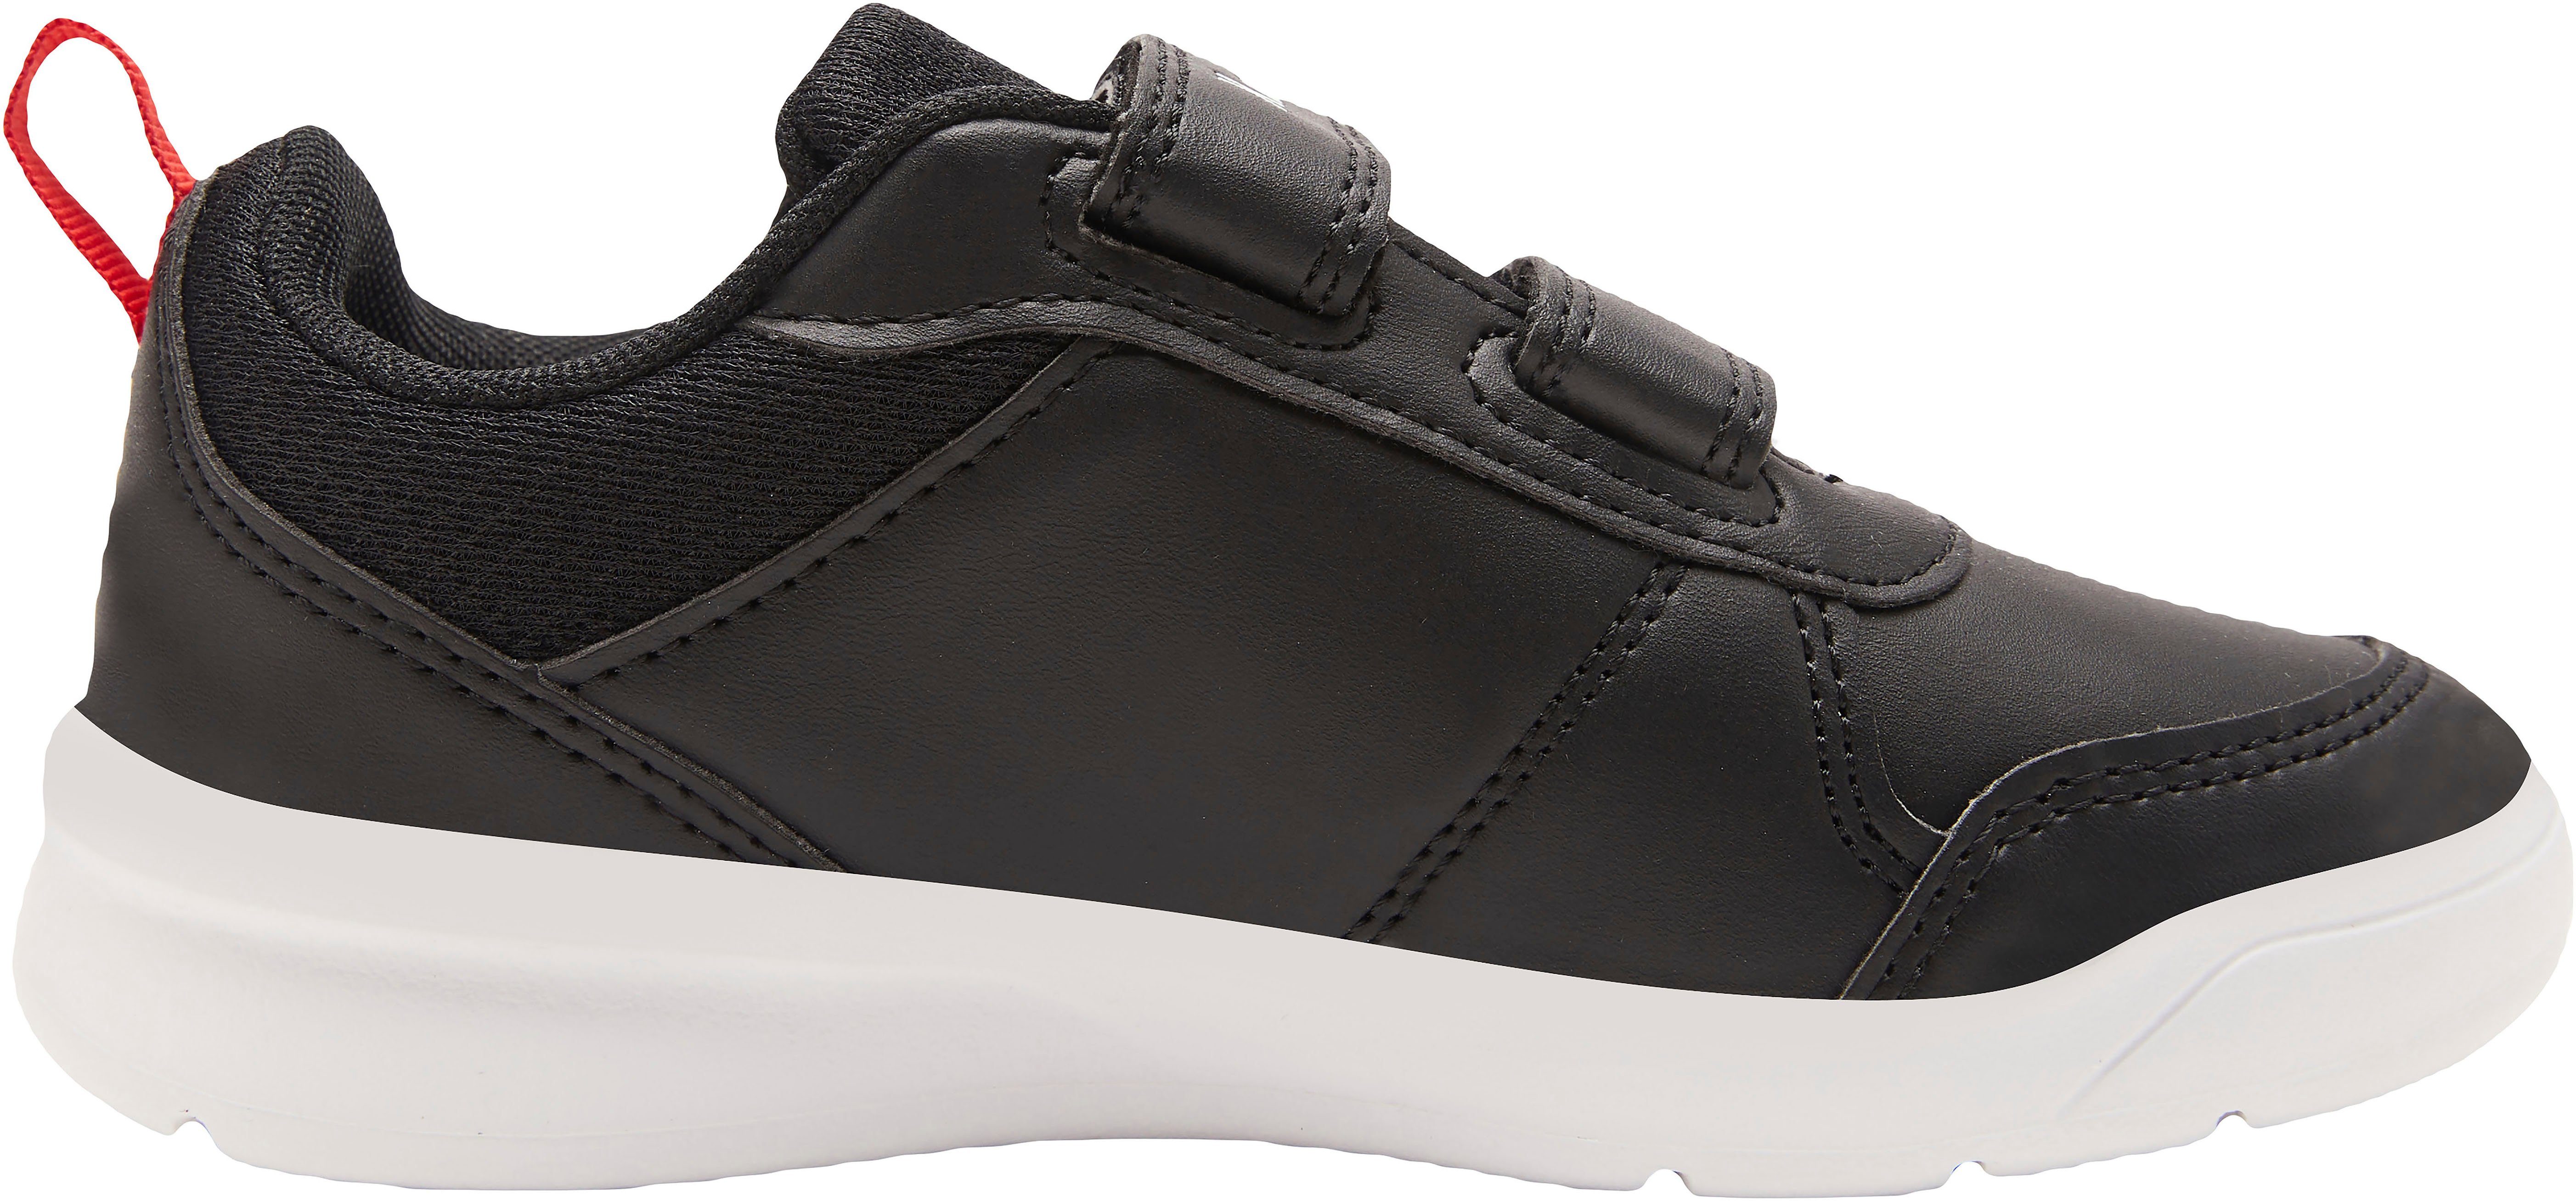 KangaROOS K-Ico V schwarz-weiß Klettverschluss Sneaker mit